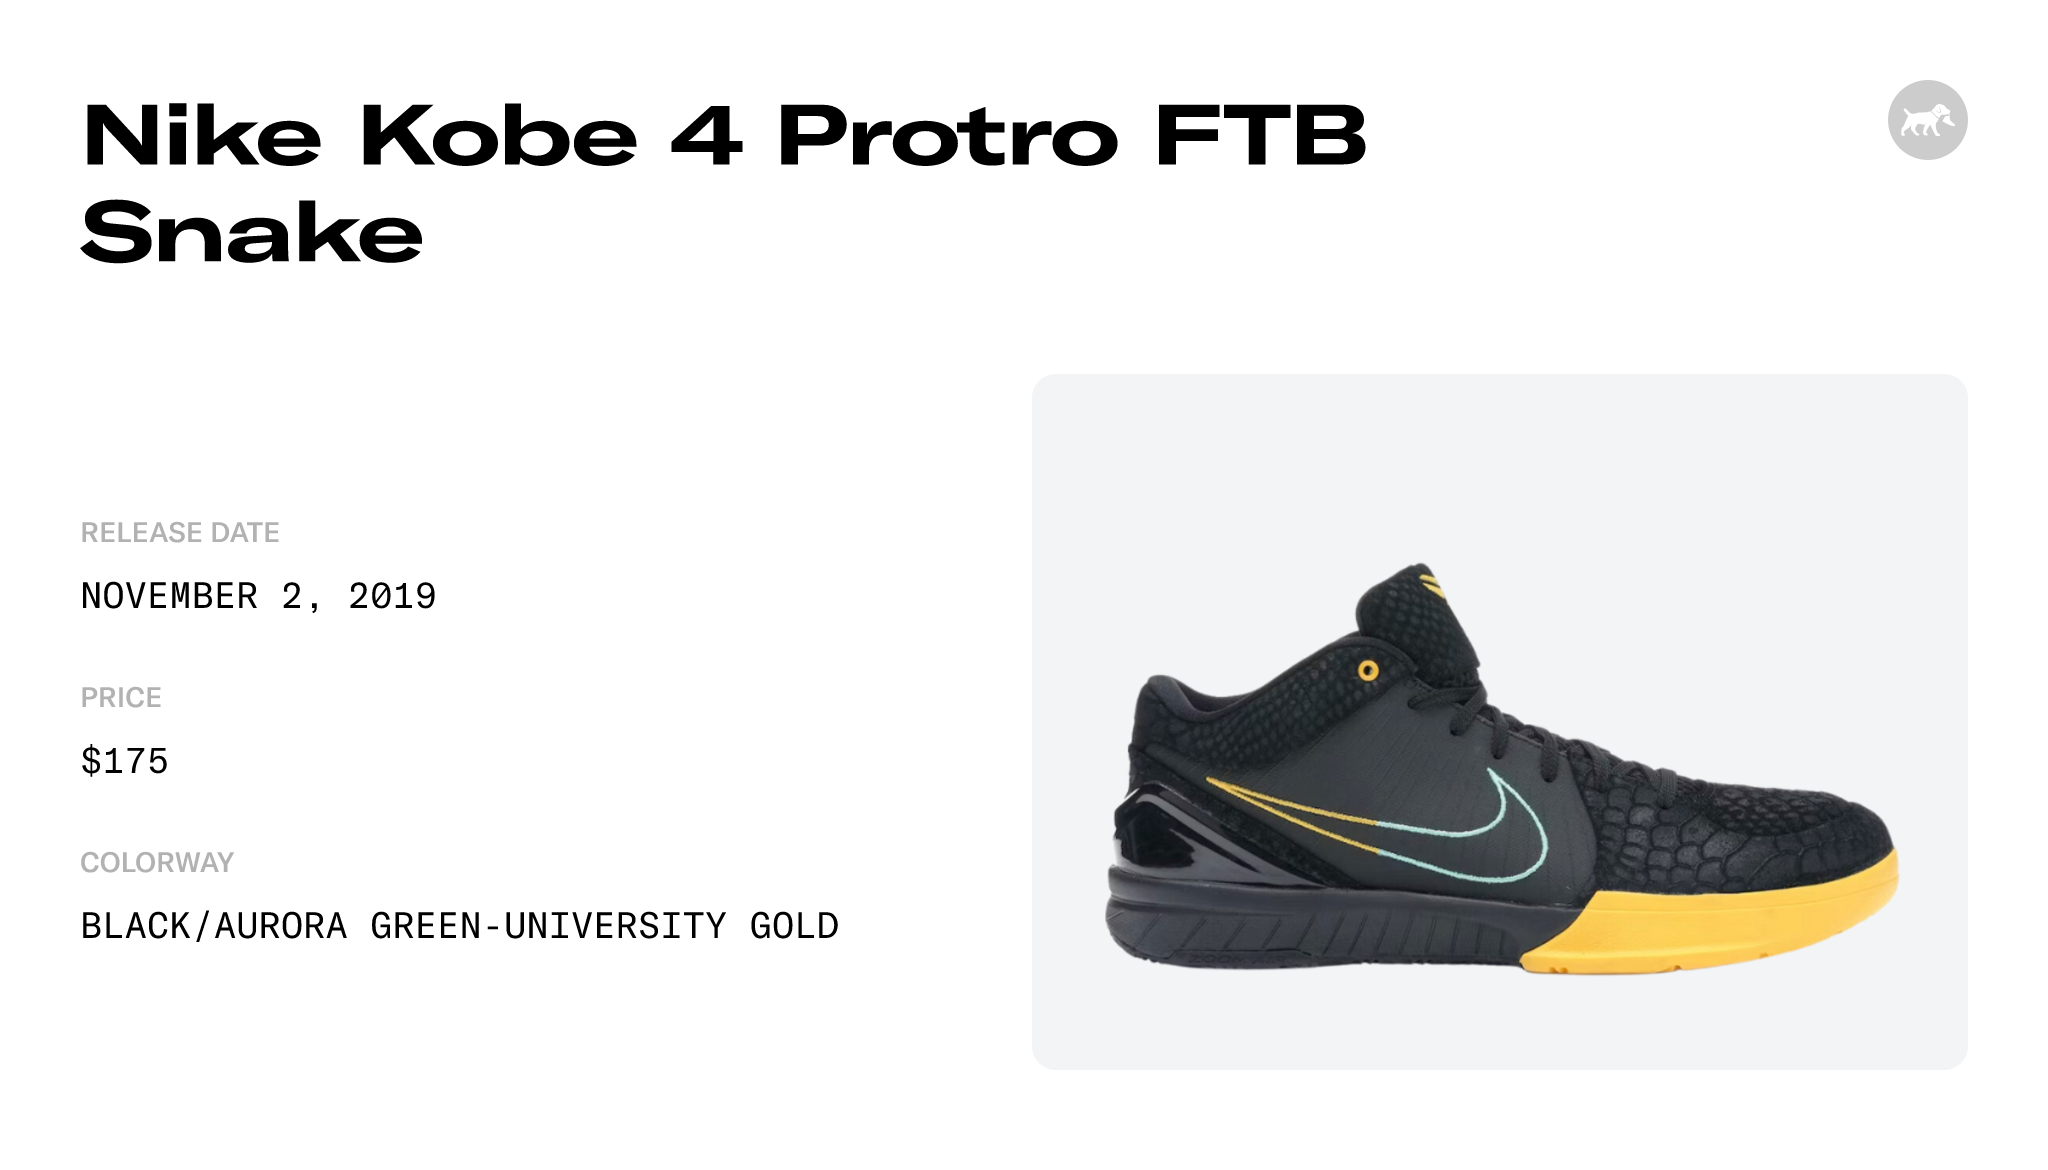 Nike Kobe 4 Protro FTB Snake - AV6339-002 Raffles and Release Date